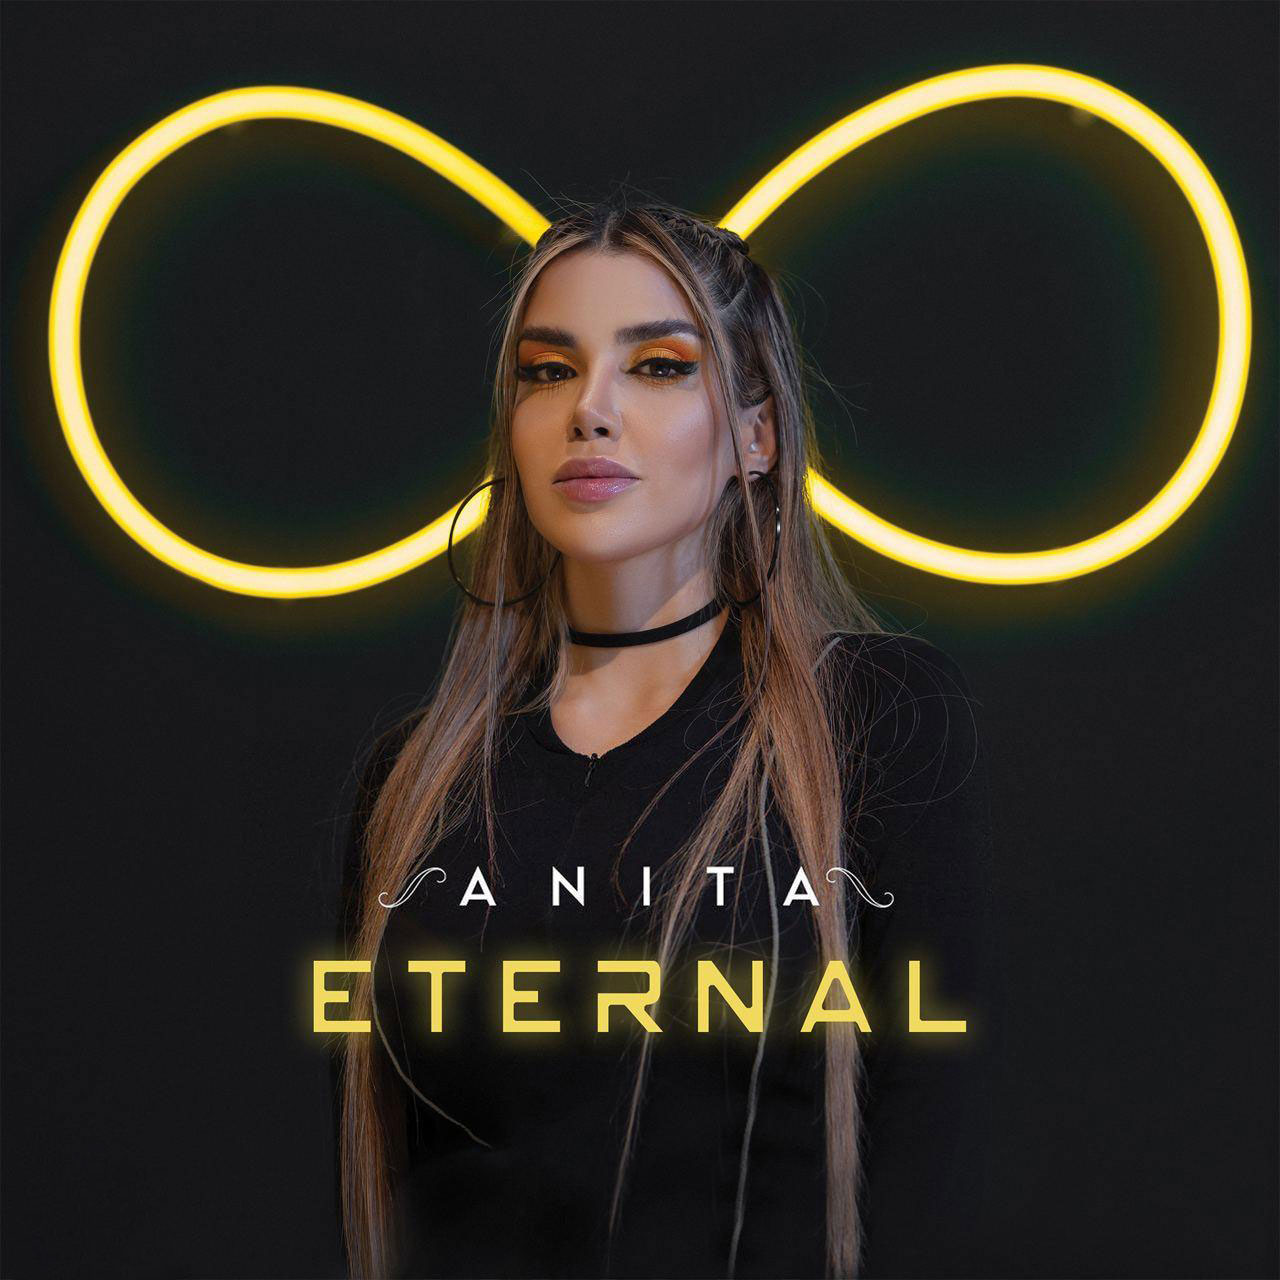 دانلود آلبوم جدید آنیتا به نام ایترنال - Anita - Eternal